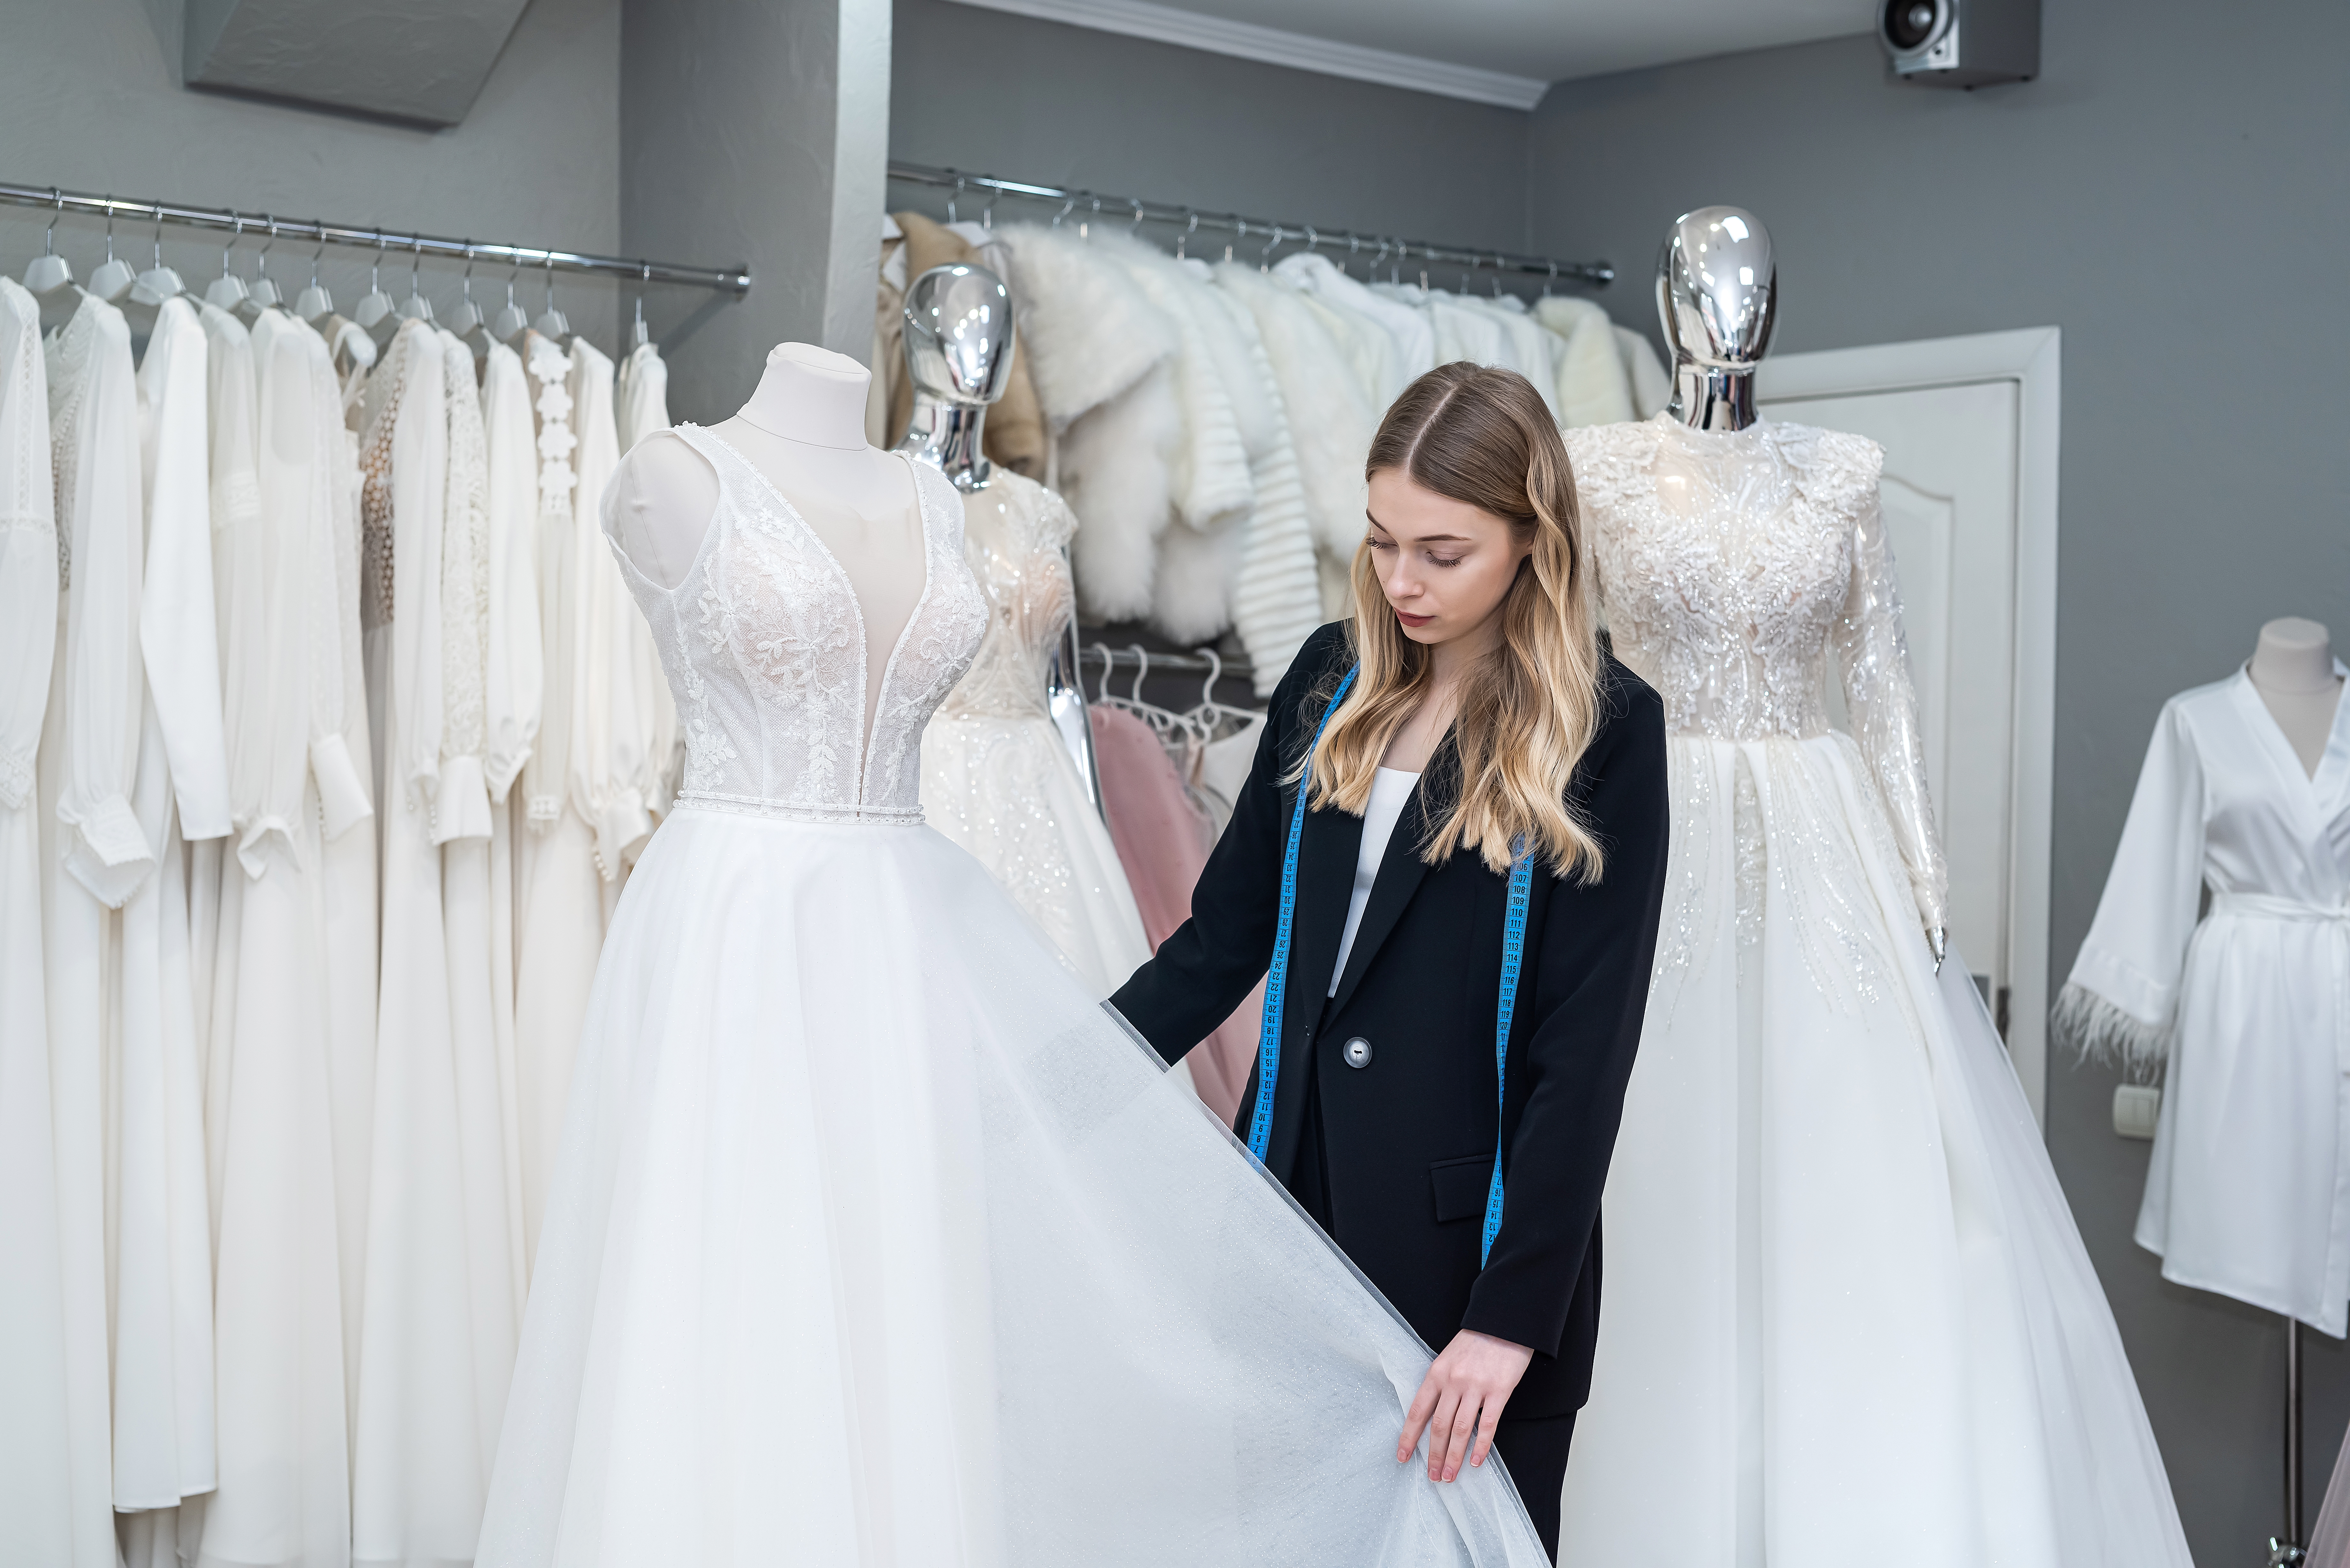 Une styliste prend les mesures d'une robe de mariée | Source : Shutterstock